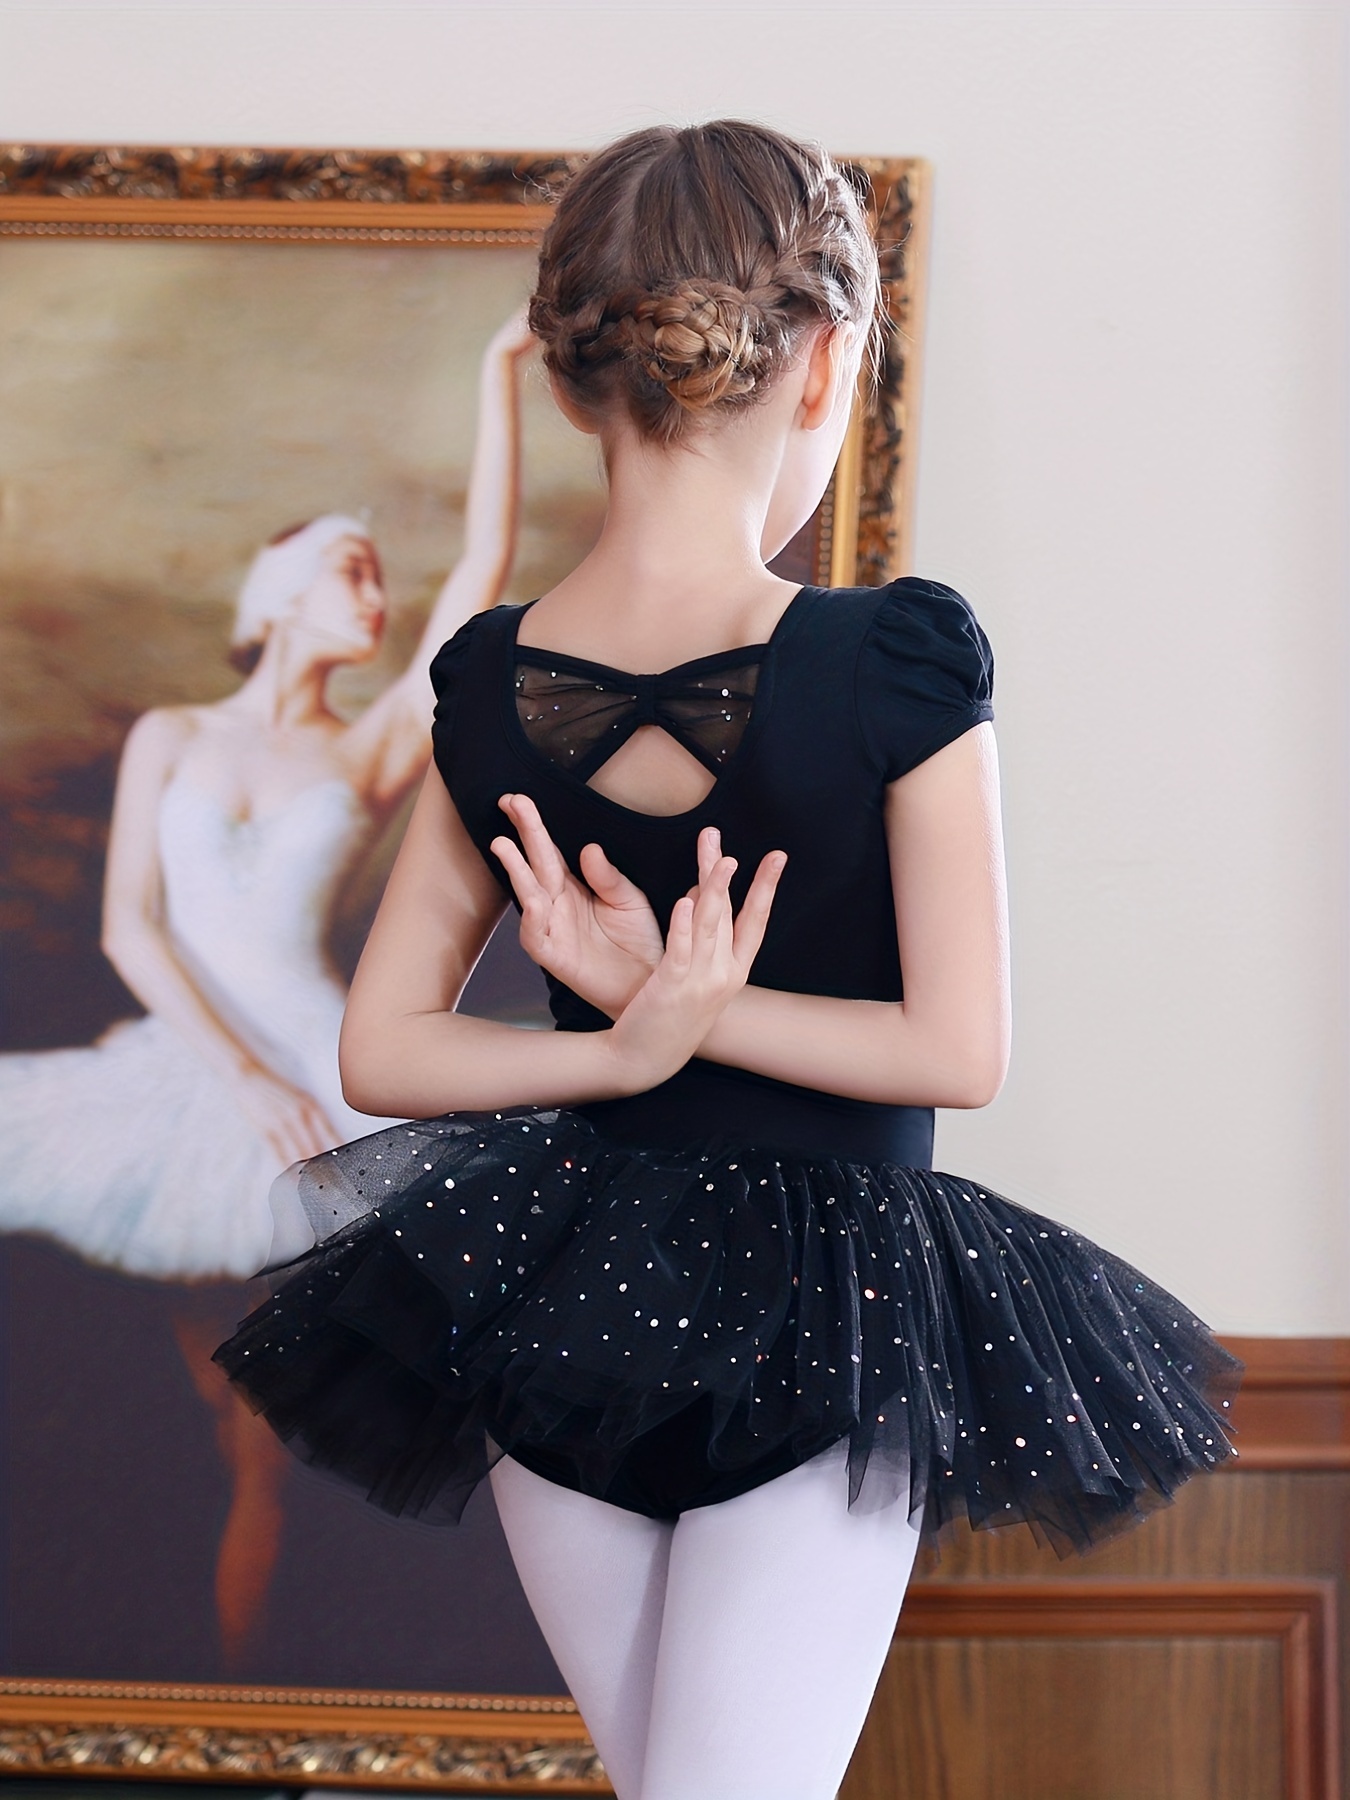 US Girls Ballet Tutu Skirt Gymnastics Leotard Dress Kids Yoga